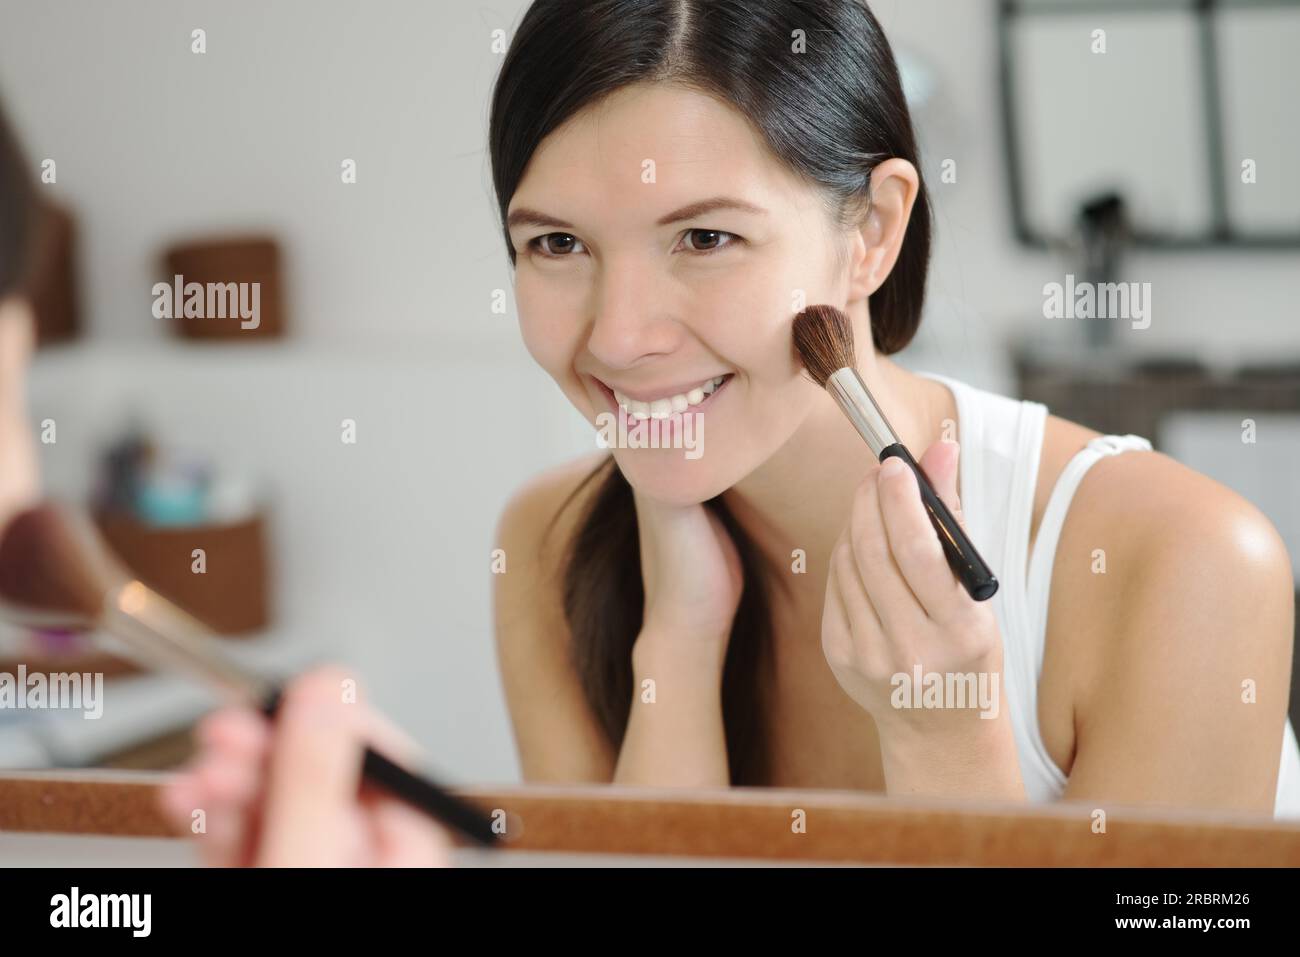 Attraente donna sorridente con i suoi lunghi capelli bruna che applica il trucco in uno specchio inclinato in avanti per vedere meglio mentre applica più blu con un grande Foto Stock